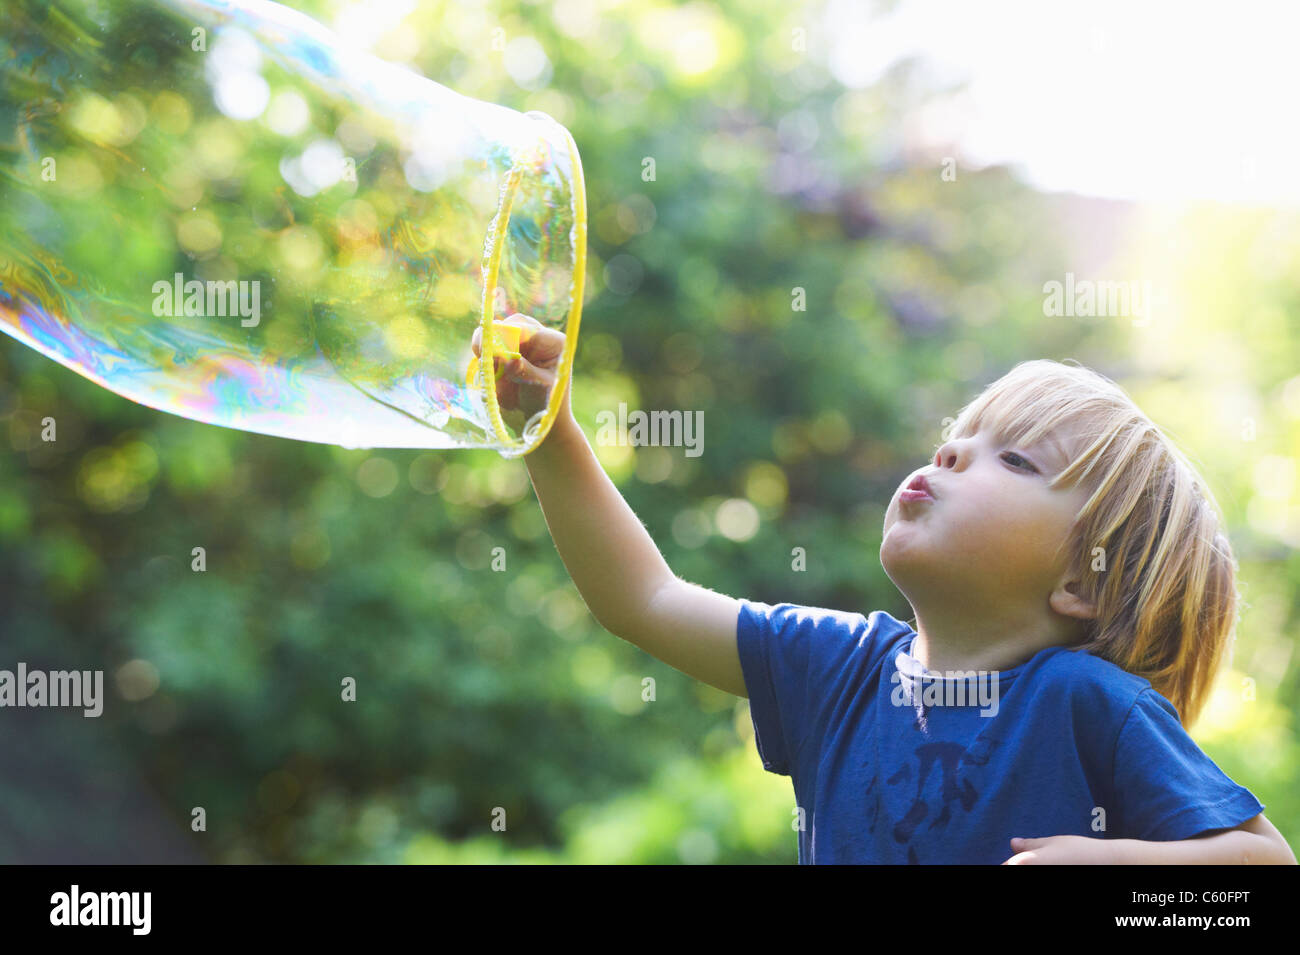 Boy blowing bubble surdimensionnés in backyard Banque D'Images